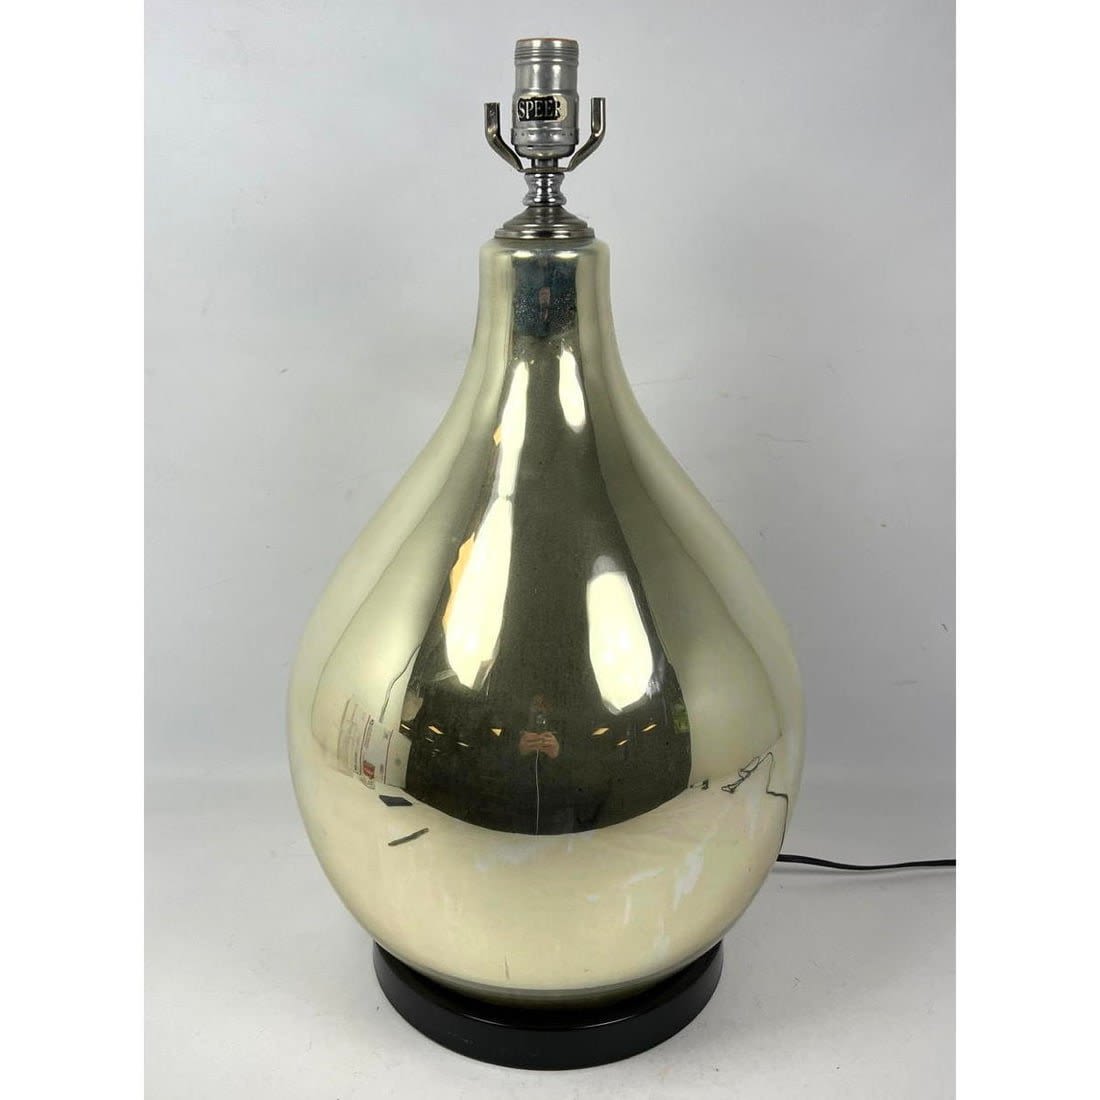 Vintage Mercury glass table lamp.